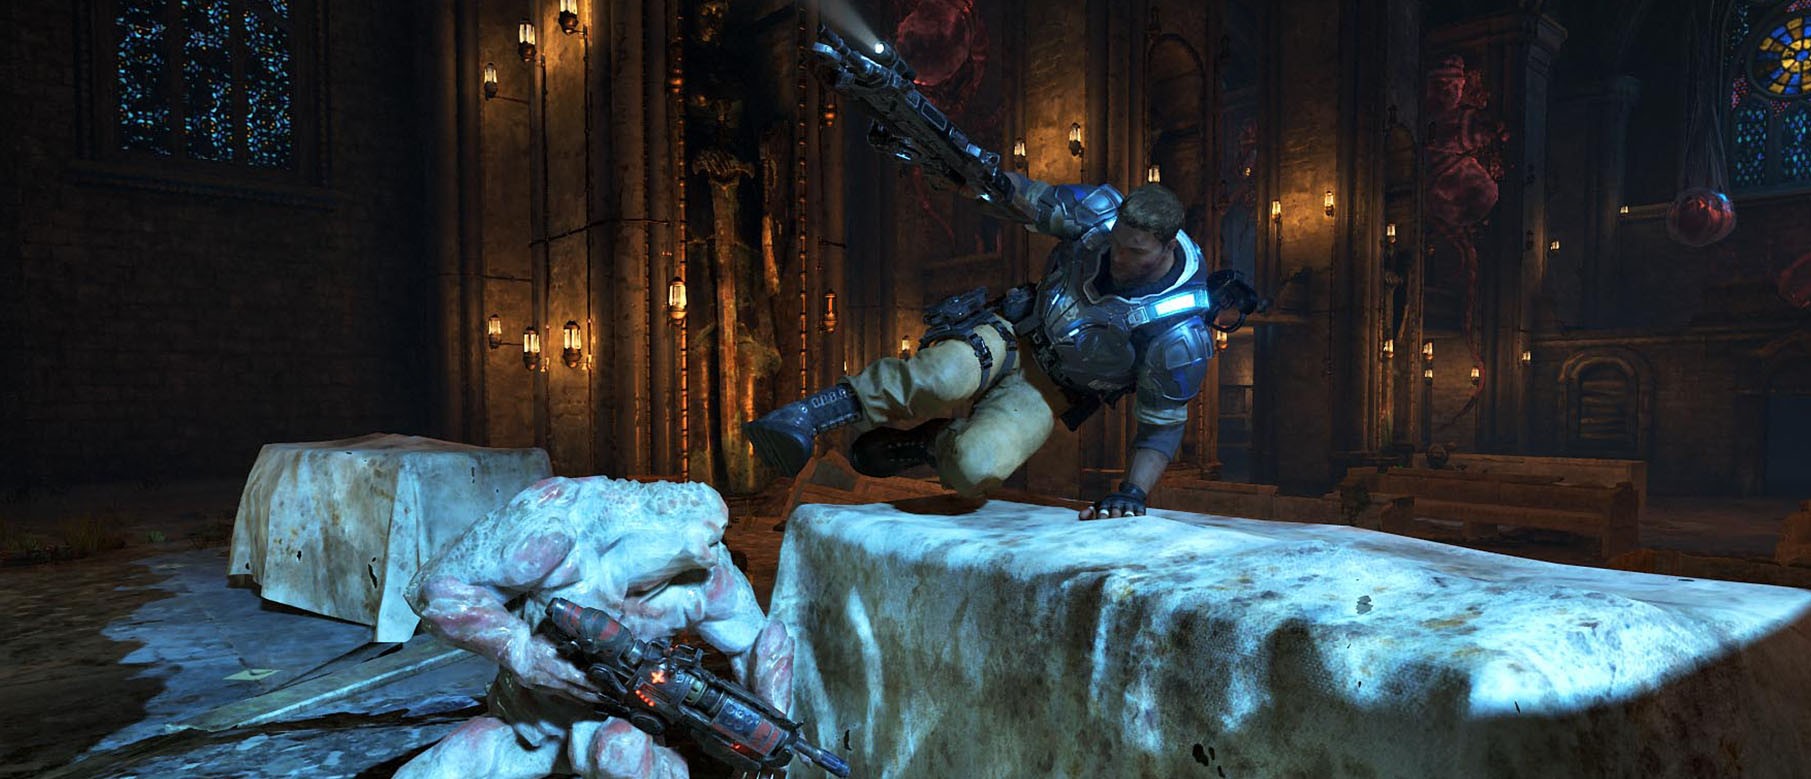 Изображение к На старте в Gears of War 4 будет сплитскрин кооператив на PC и кроссплатформенная поддержка